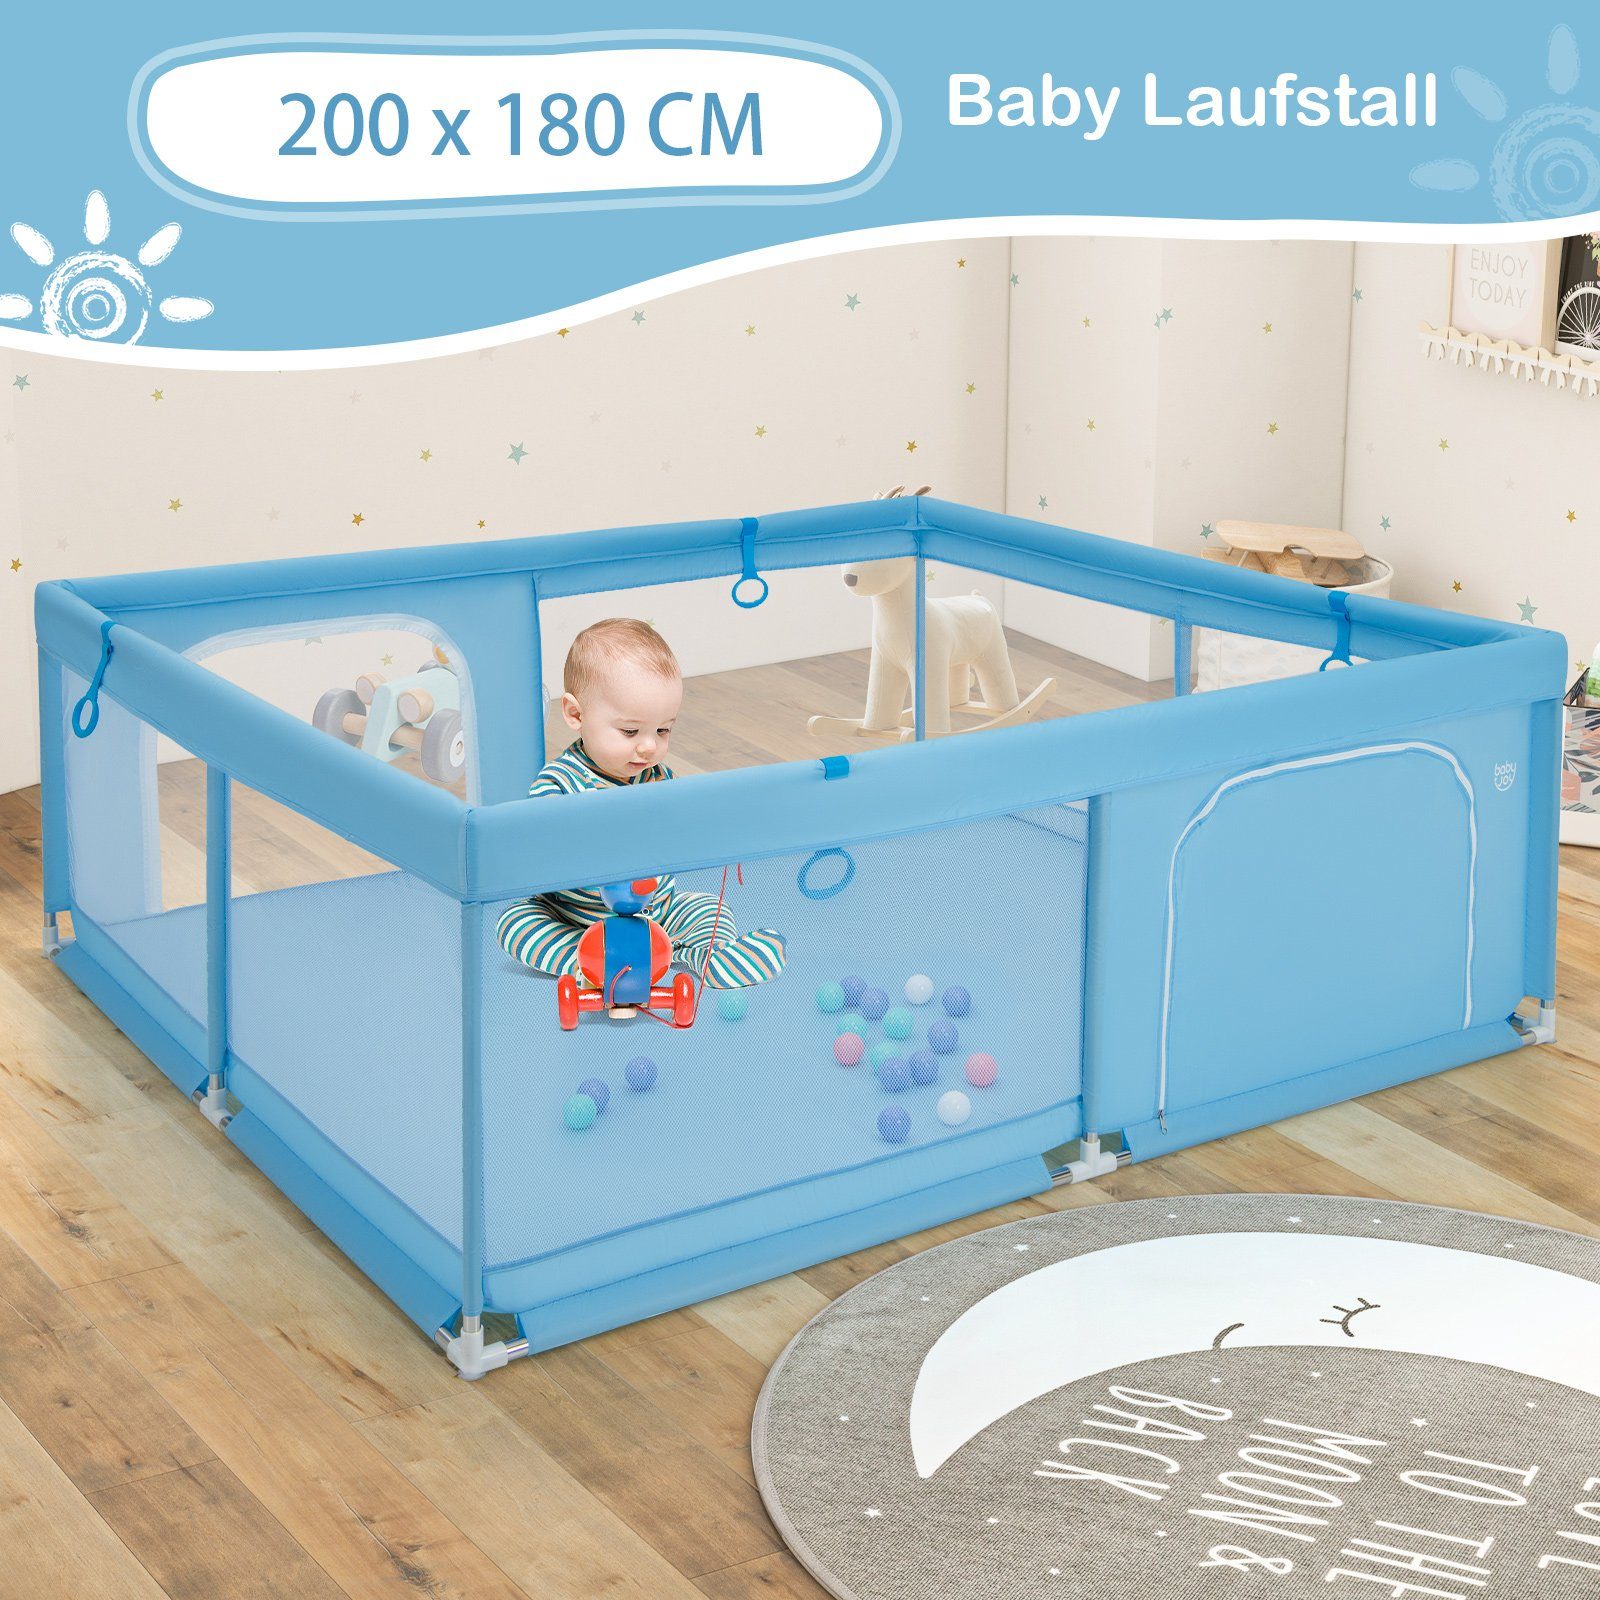 Baby mit Laufgitter, Bällen blau x 50 COSTWAY 180cm, Laufstall 200